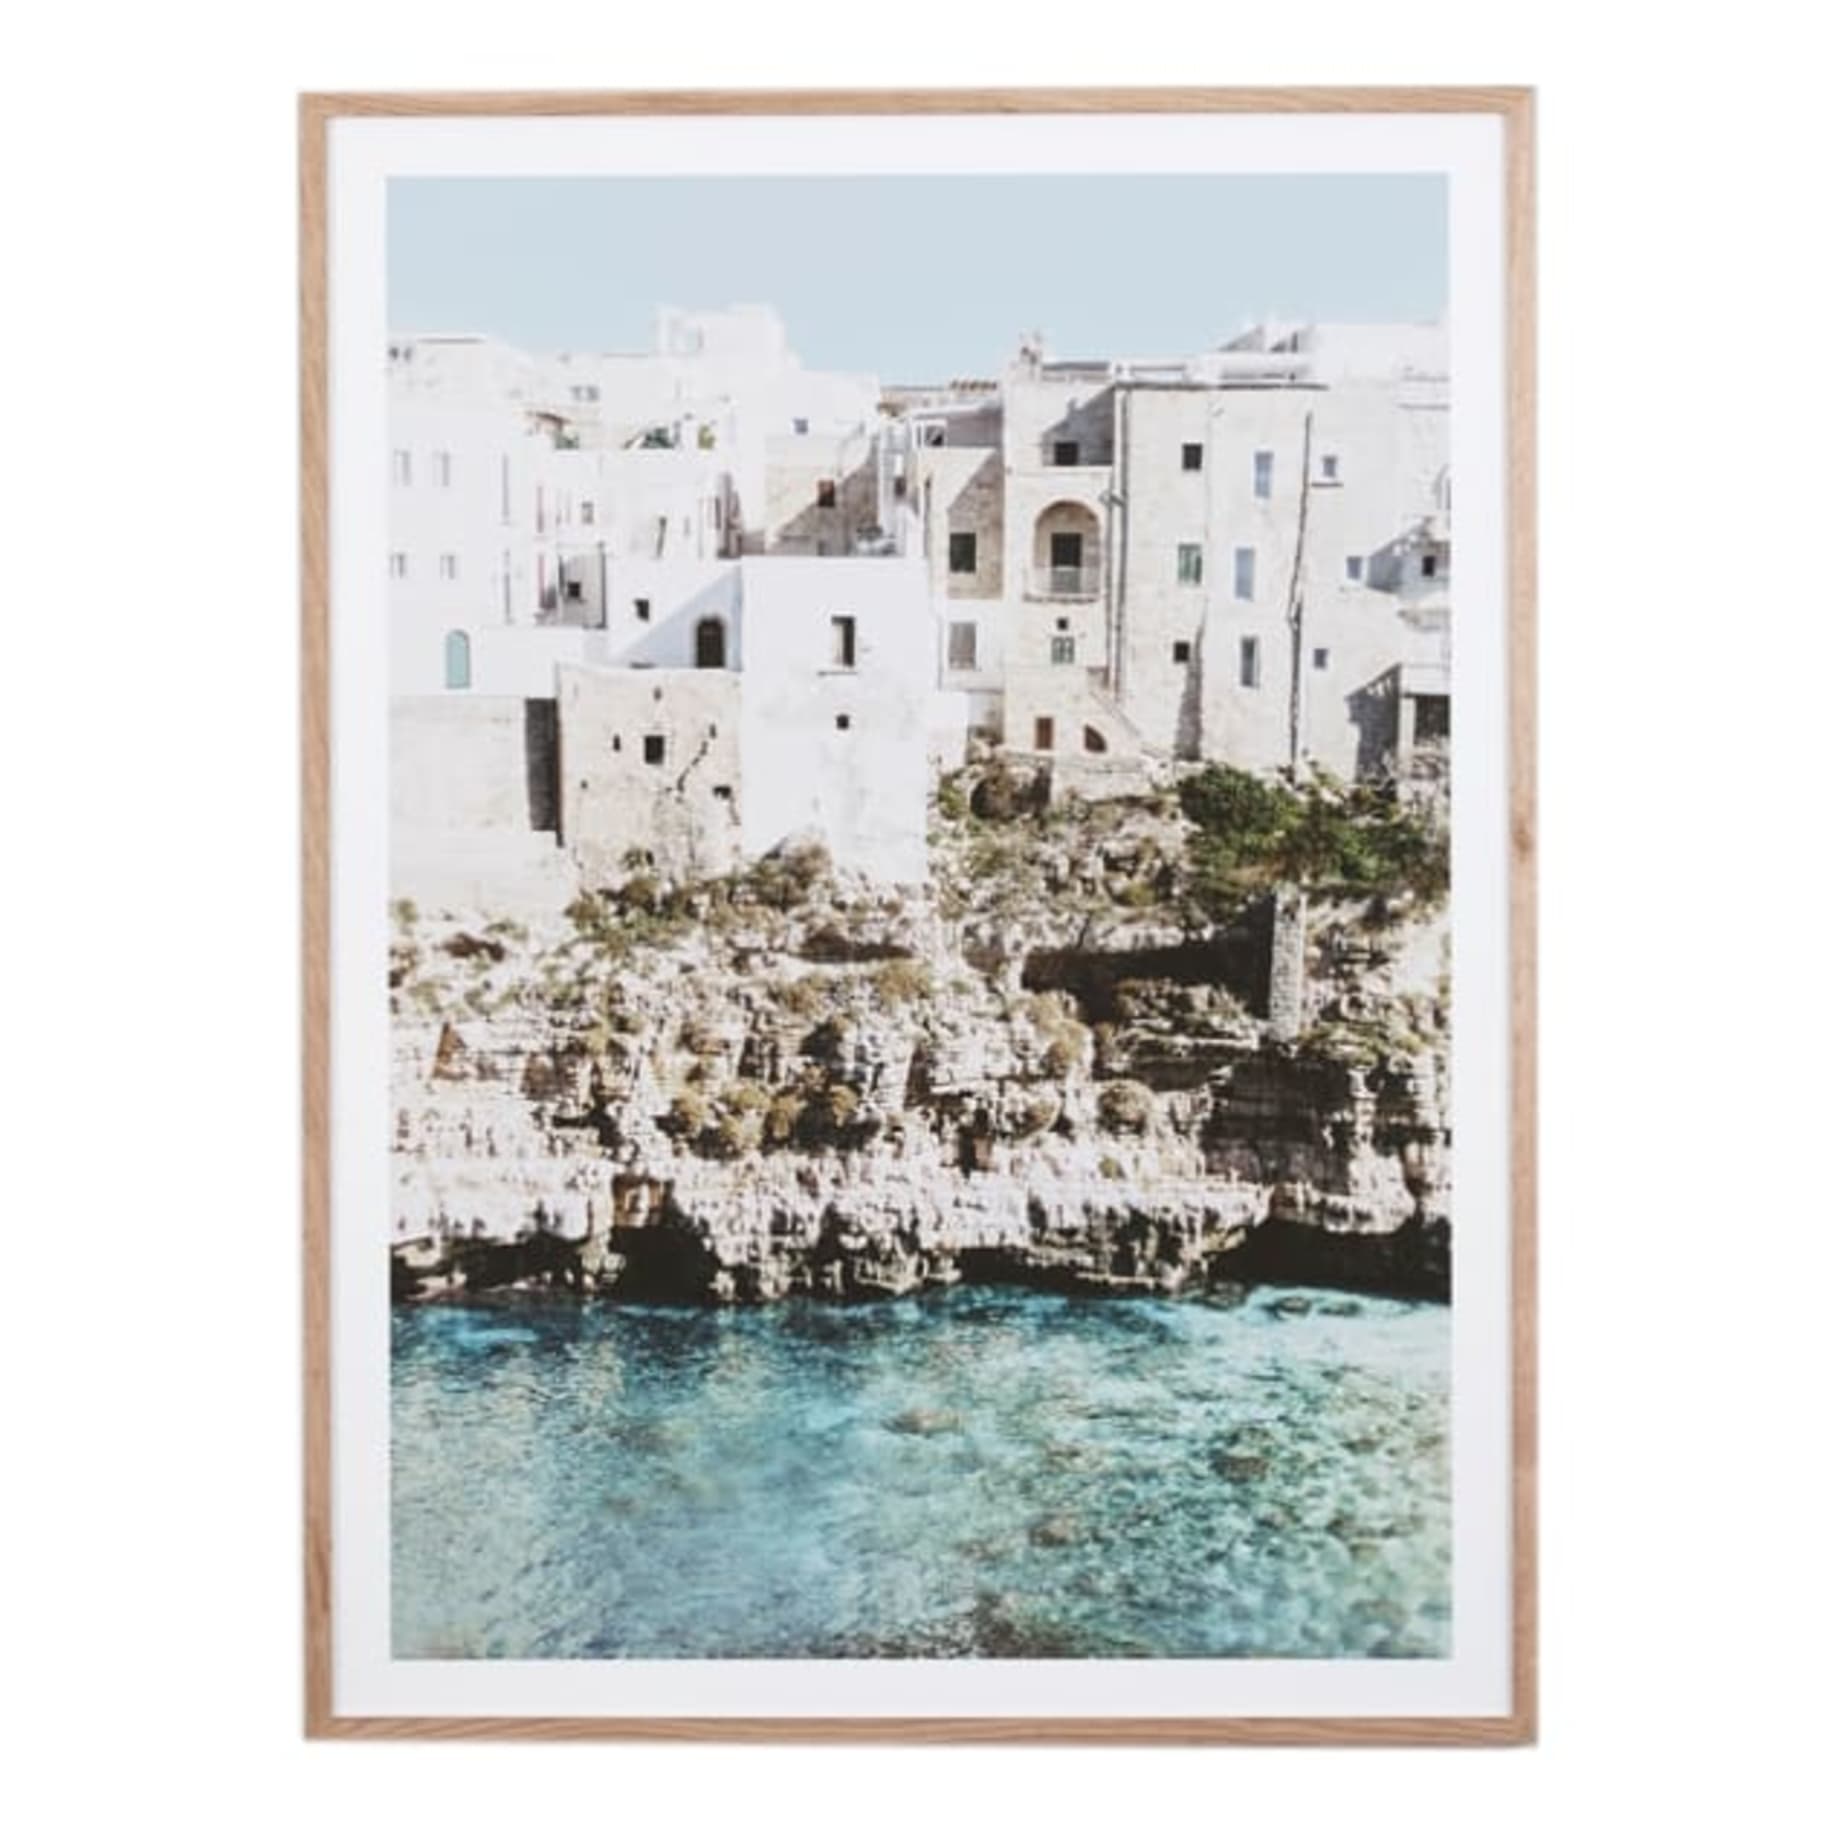 Amalfi Village Framed Print in 85 x 114cm